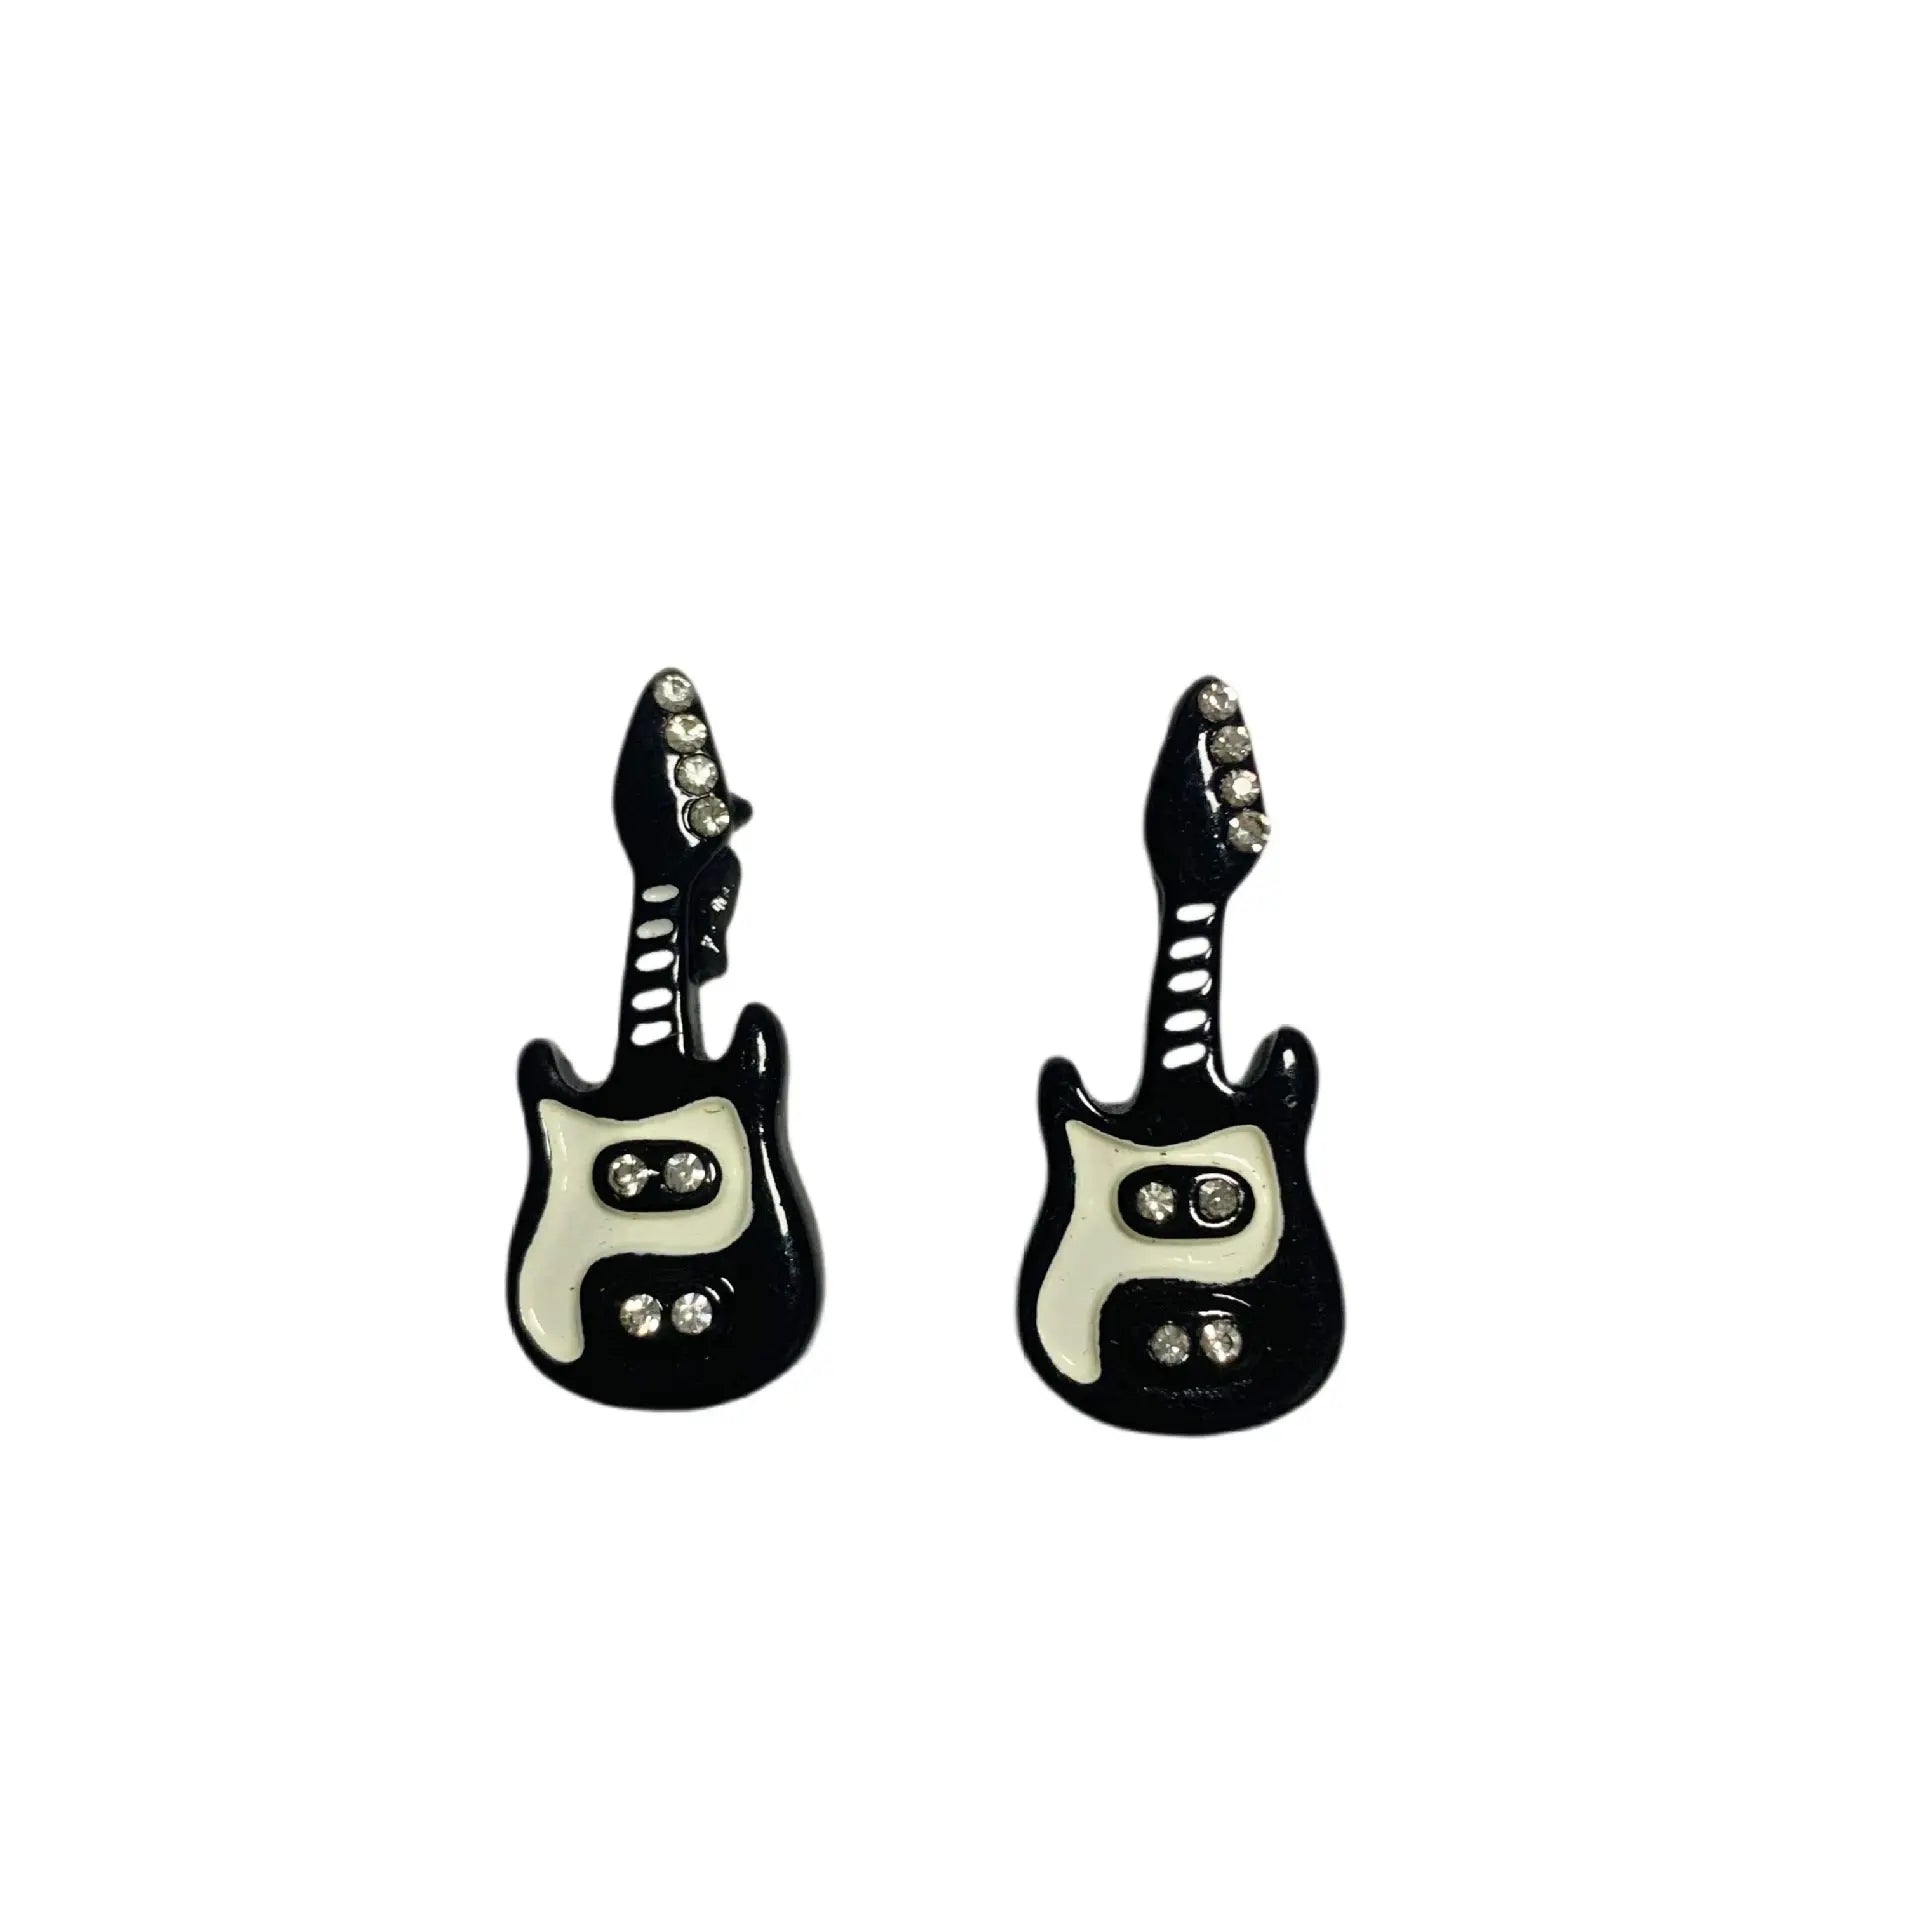 'Punk Princess' Kawaii Punk Guitar Earrings AlielNosirrah